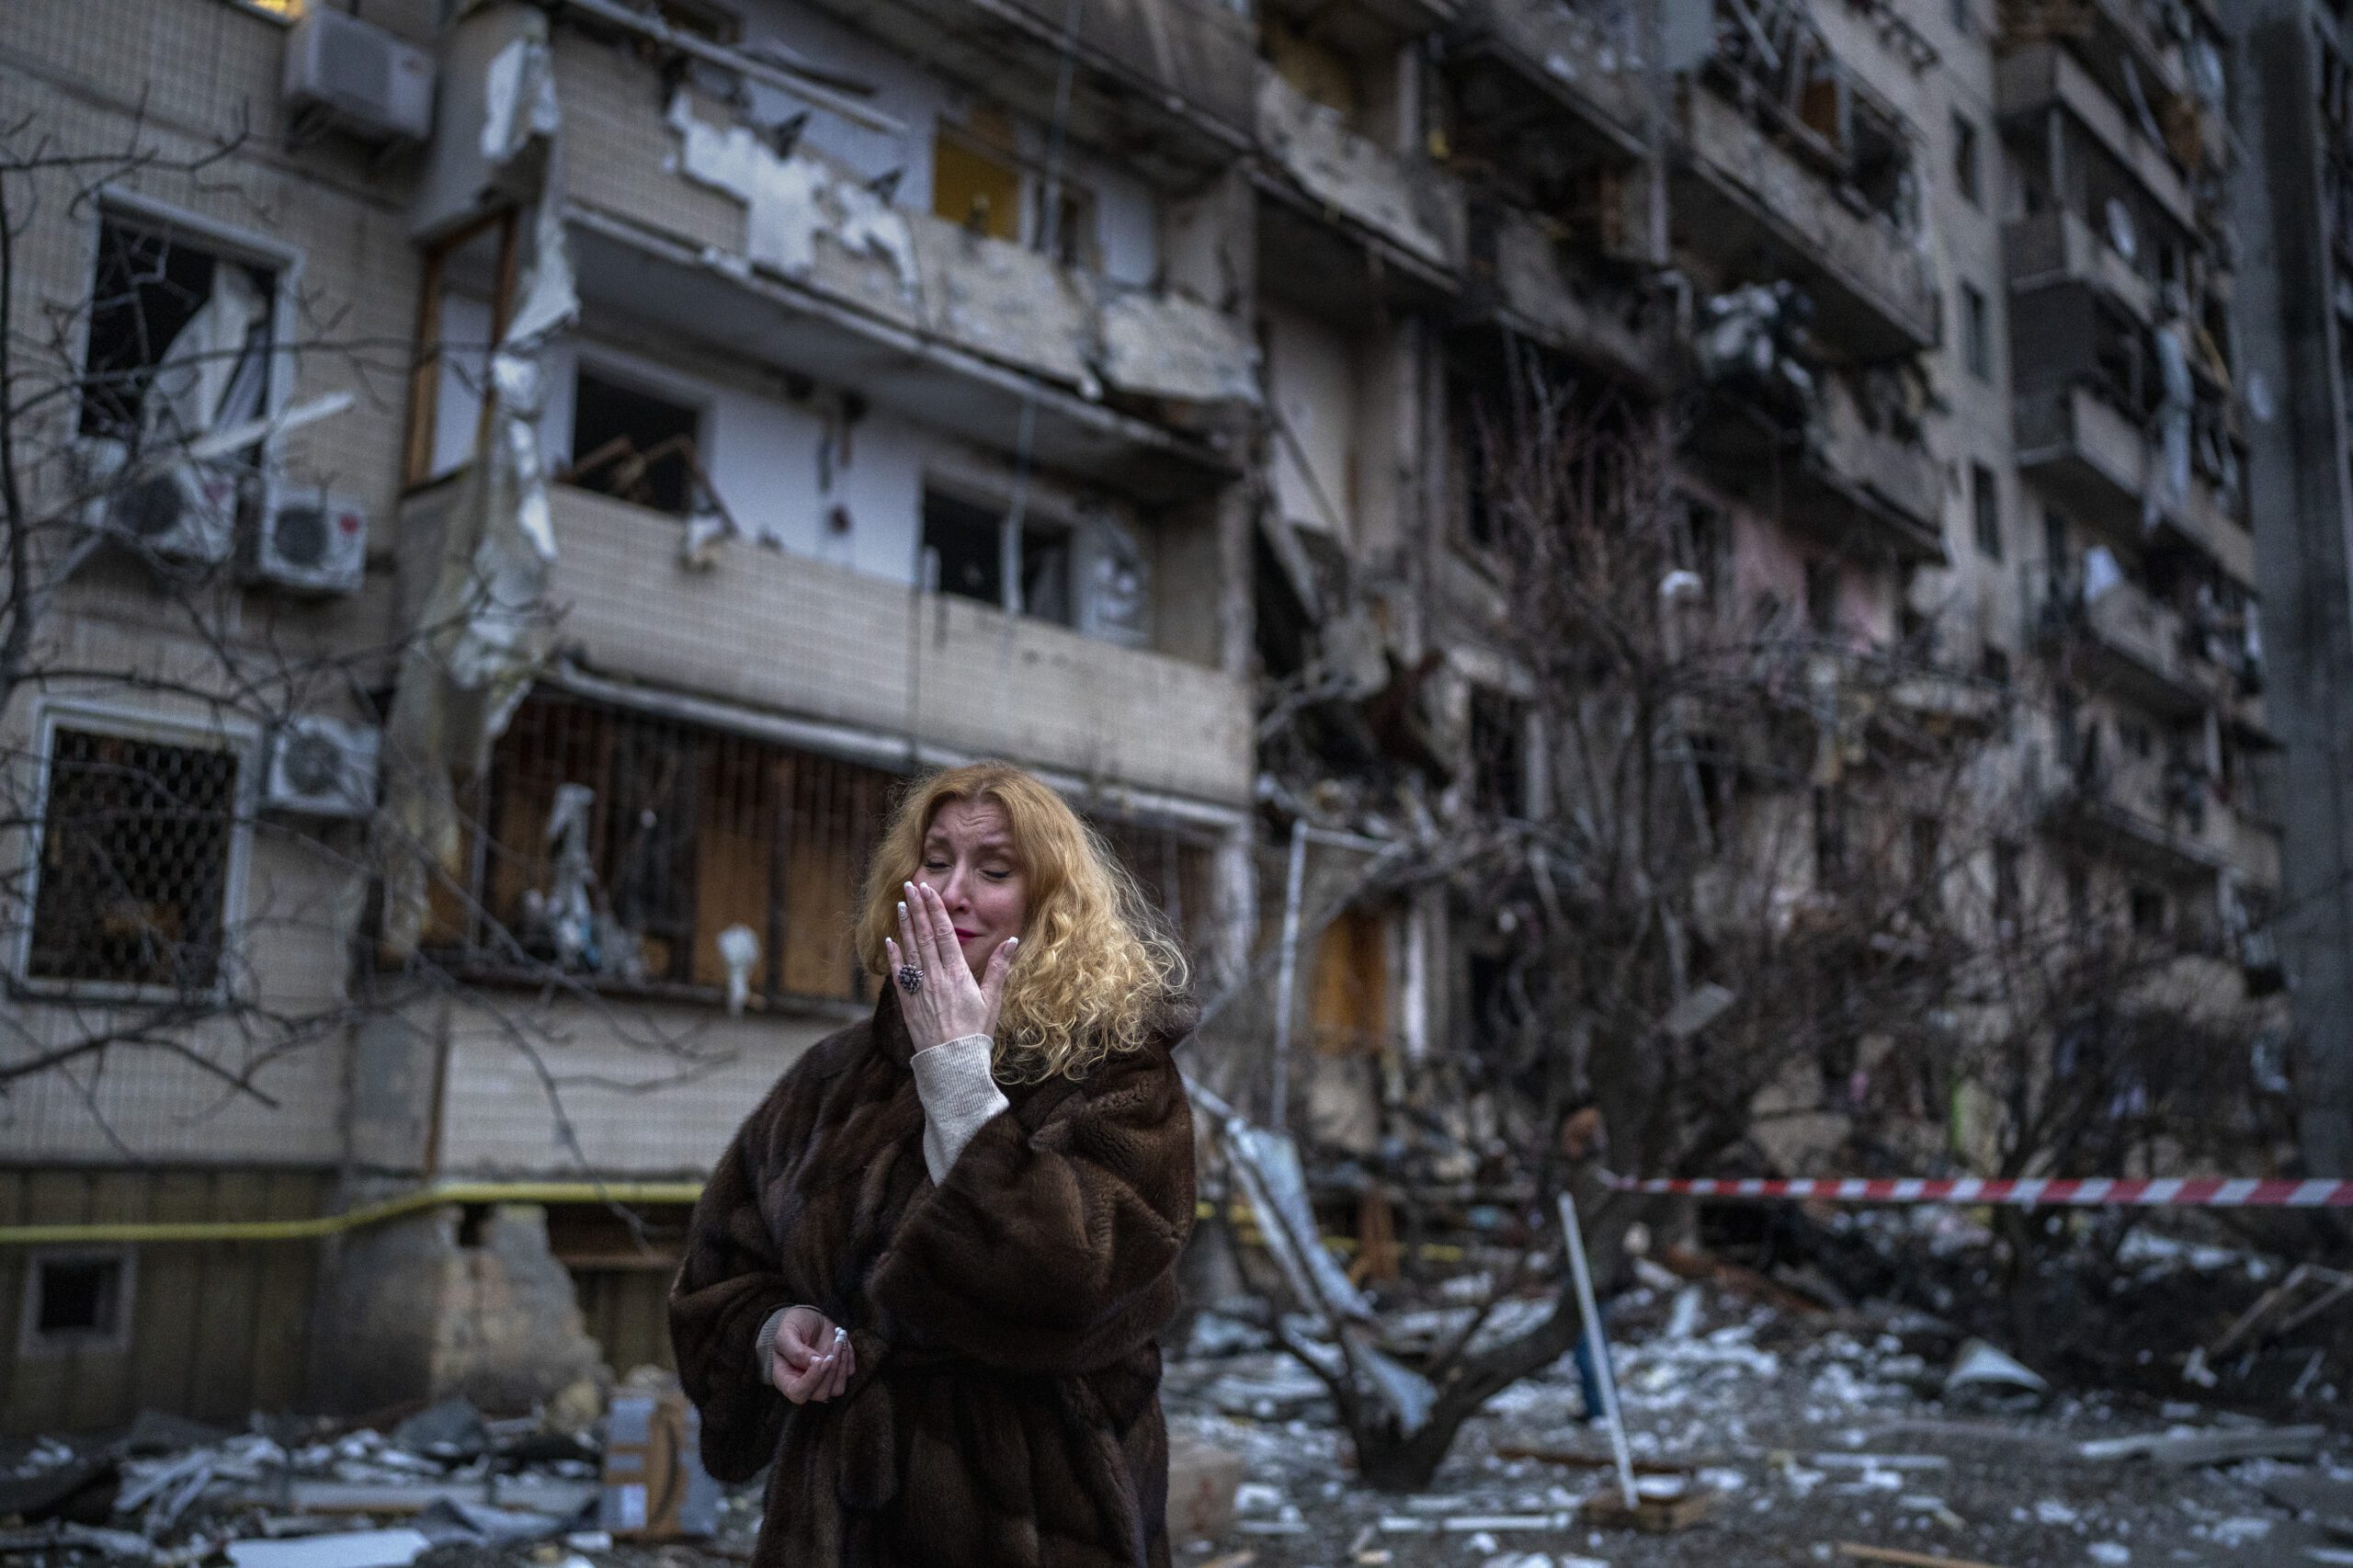 Russia Ukraine War One Month Photo Gallery